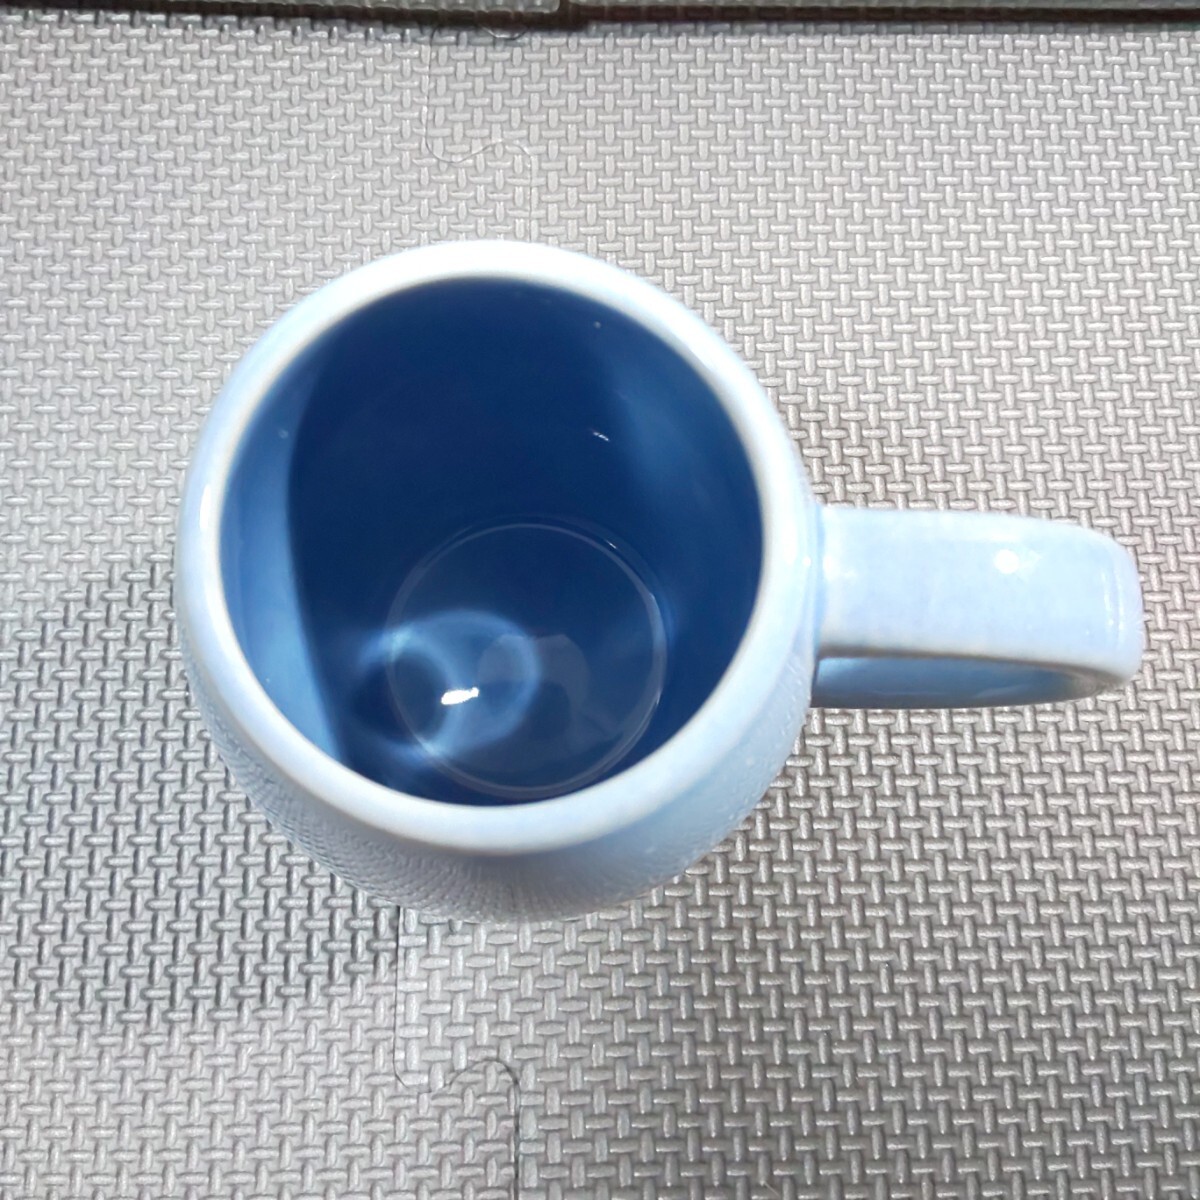 カルディ「ワインカップ 1個」陶器製 Kaldi 水色 カップ_画像7